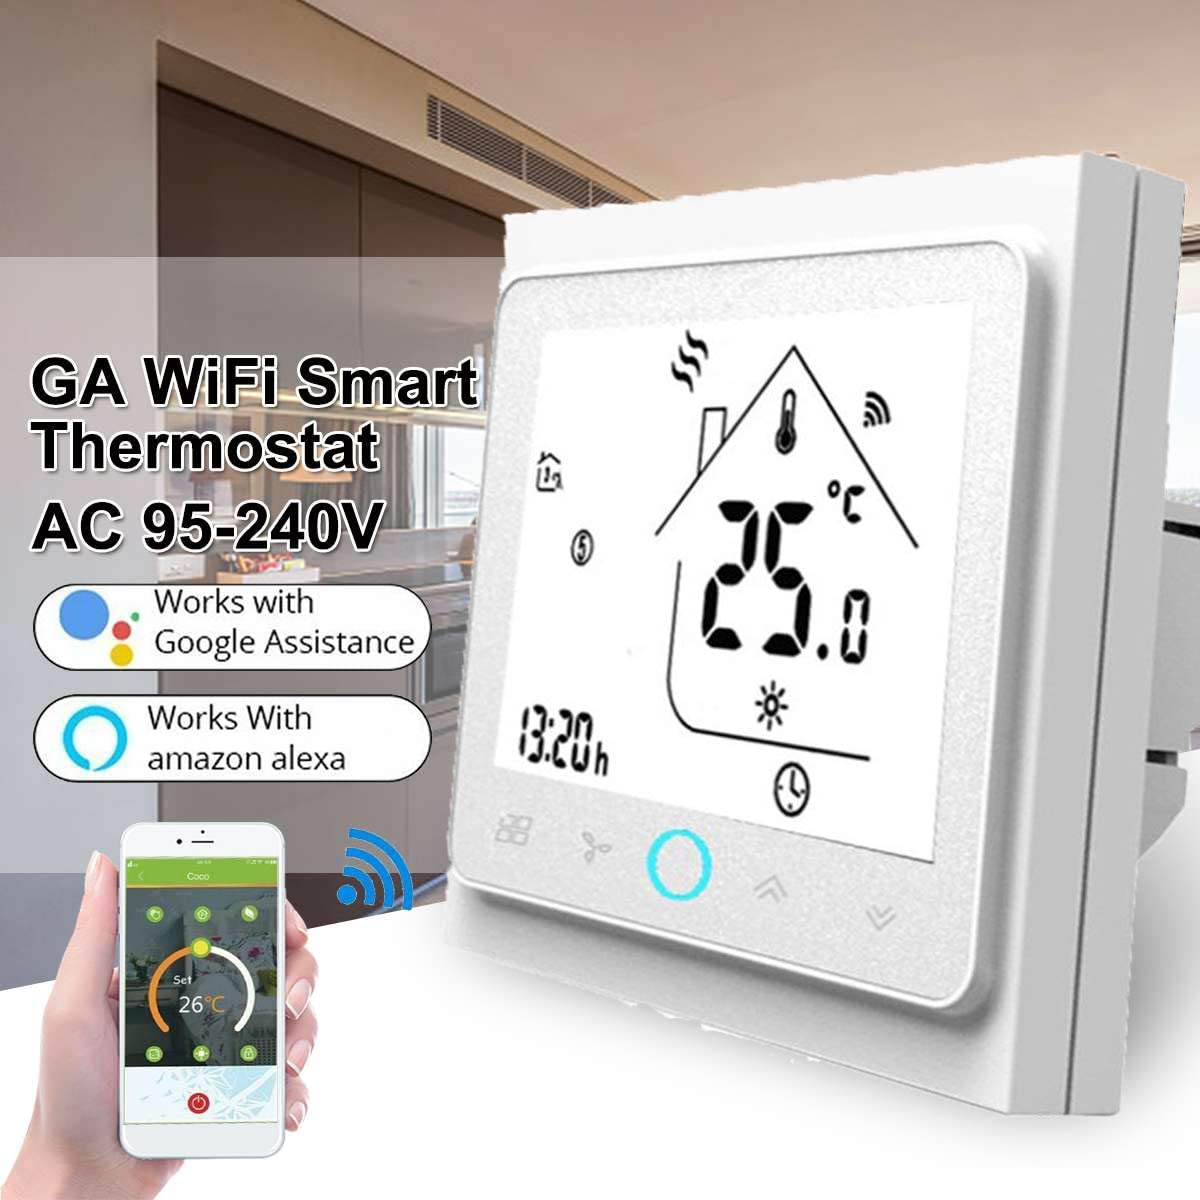 Termostato WiFi per Caldaia a Gas,Termostato Caldaia Schermo LCD